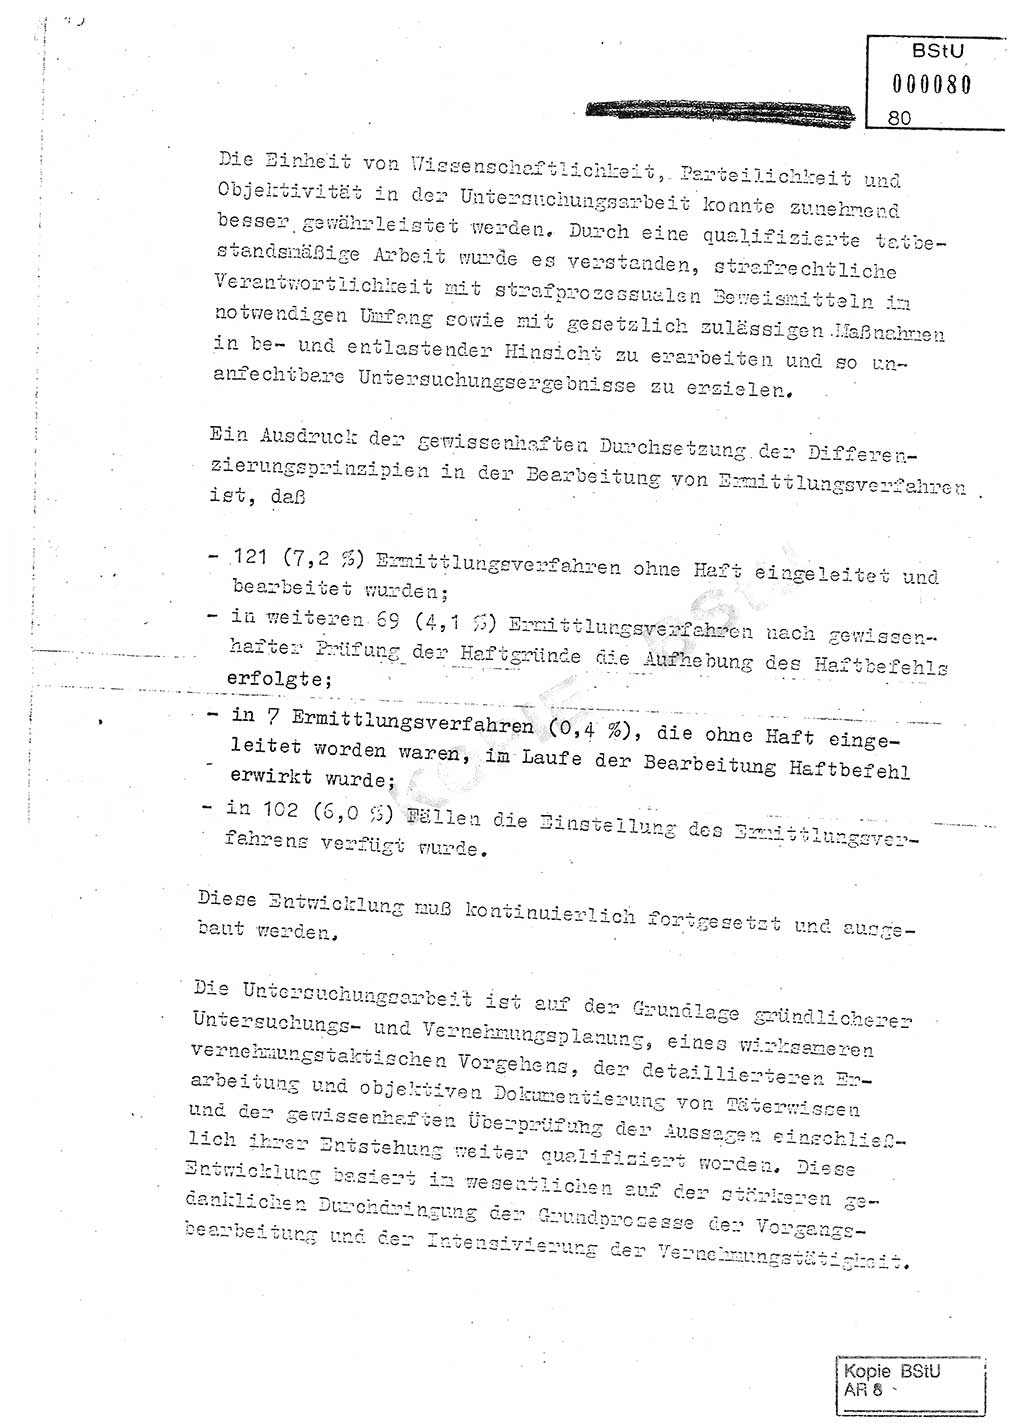 Jahresbericht der Hauptabteilung (HA) Ⅸ 1980, Analyse über die Entwicklung und die Wirksamkeit der politisch-operativen Arbeit der Linie Ⅸ in der Zeit vom 1. Januar 1980 bis 30. September 1980, Ministerium für Staatssicherheit (MfS) der Deutschen Demokratischen Republik (DDR), Hauptabteilung Ⅸ, Geheime Verschlußsache (GVS) 014-660/80, Berlin 1980, Seite 80 (Anal. MfS DDR HA Ⅸ GVS 014-660/80 1980, S. 80)